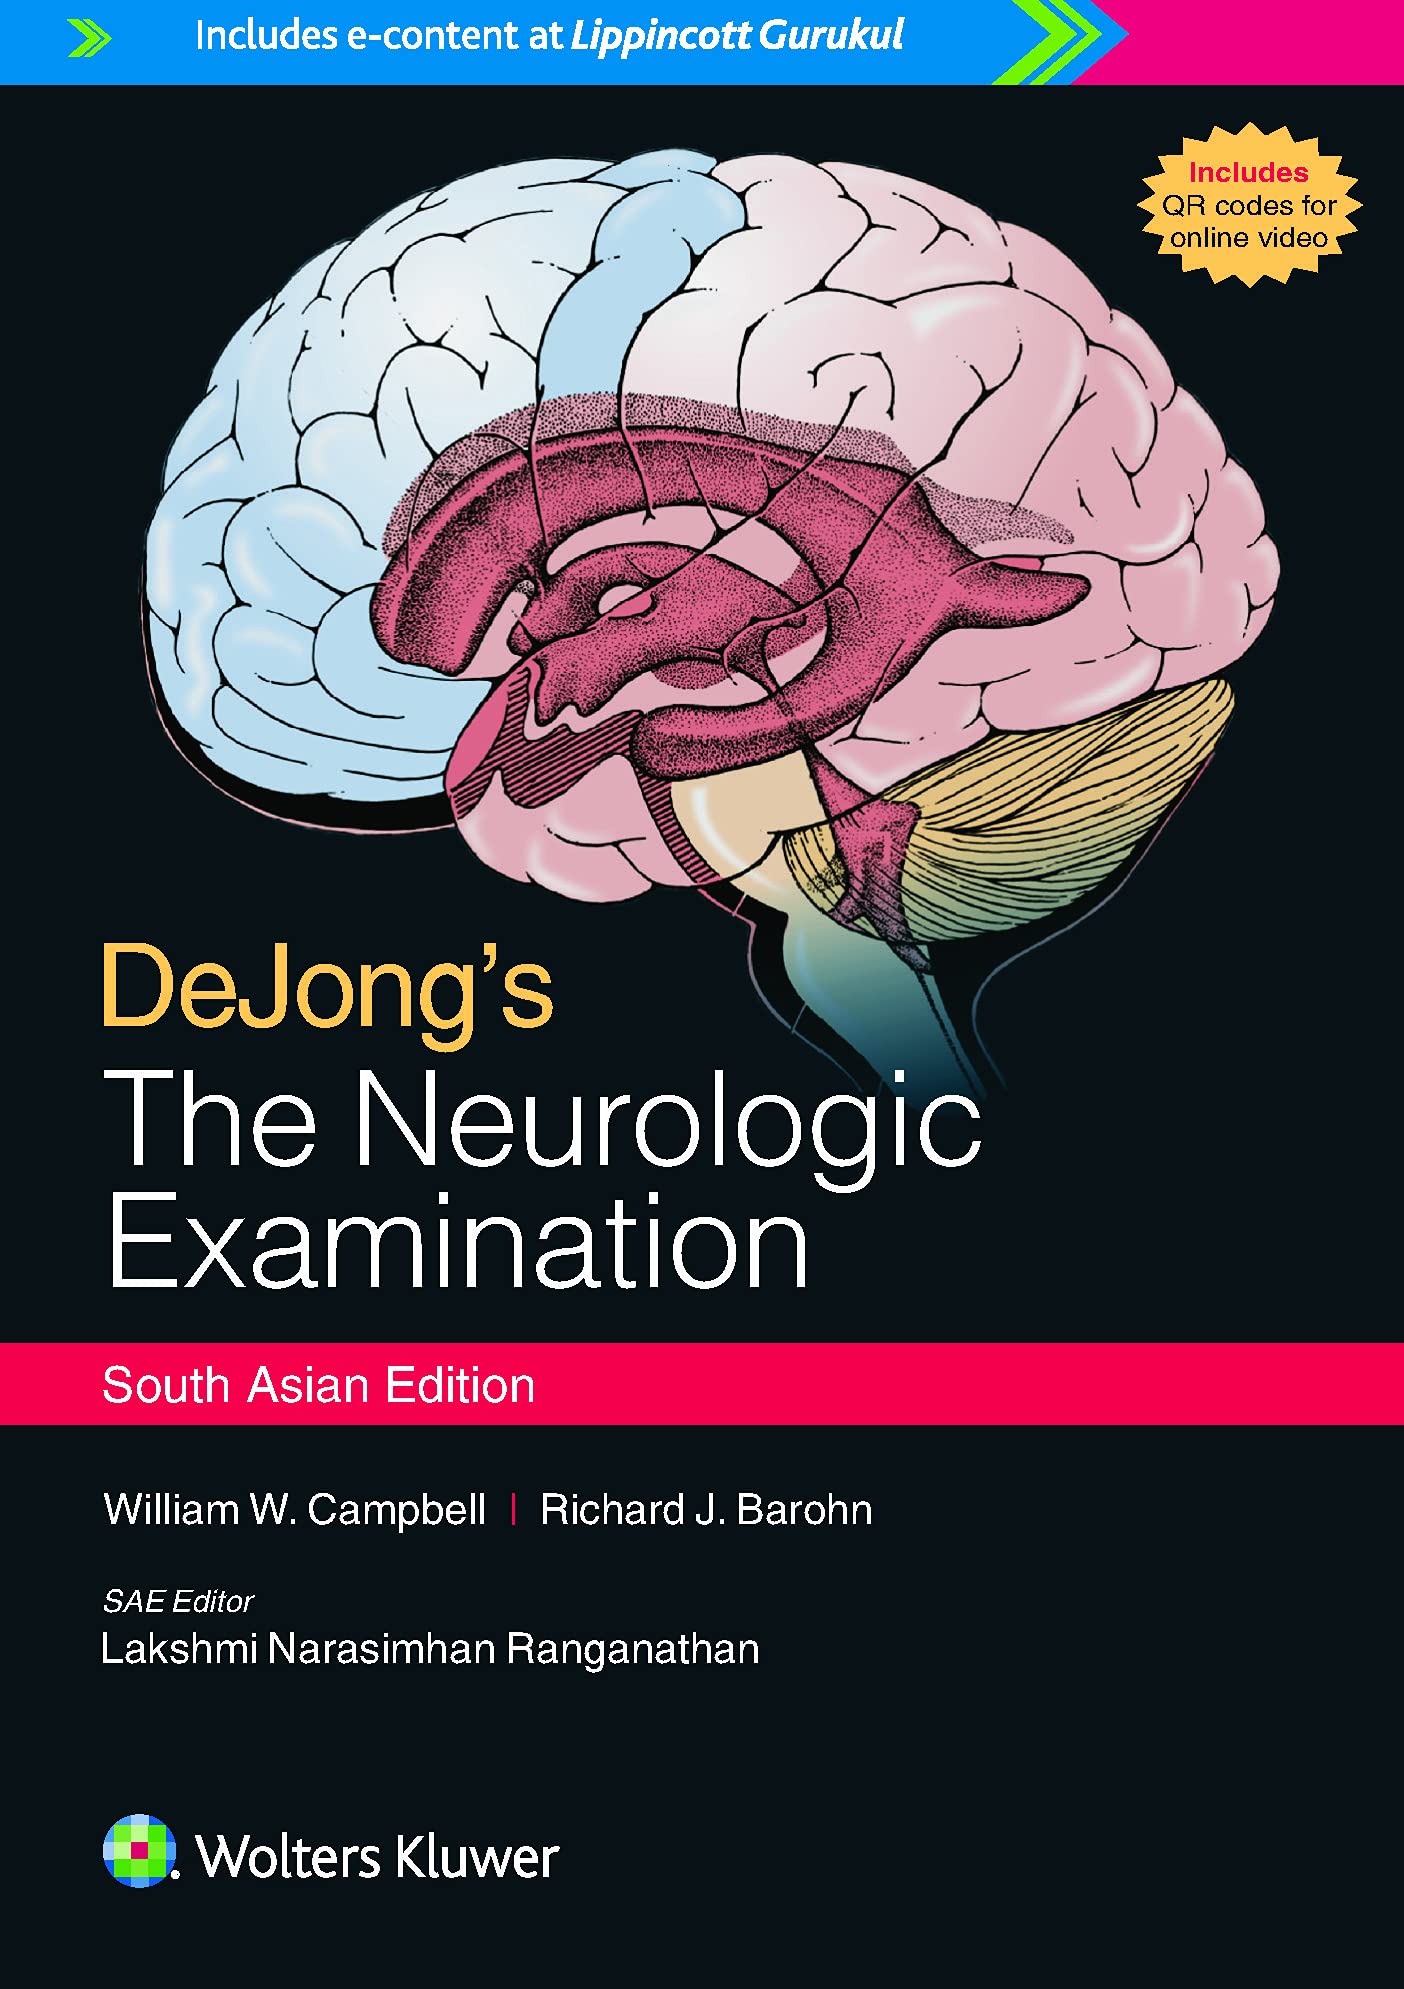 De Jong’s the neurological examination